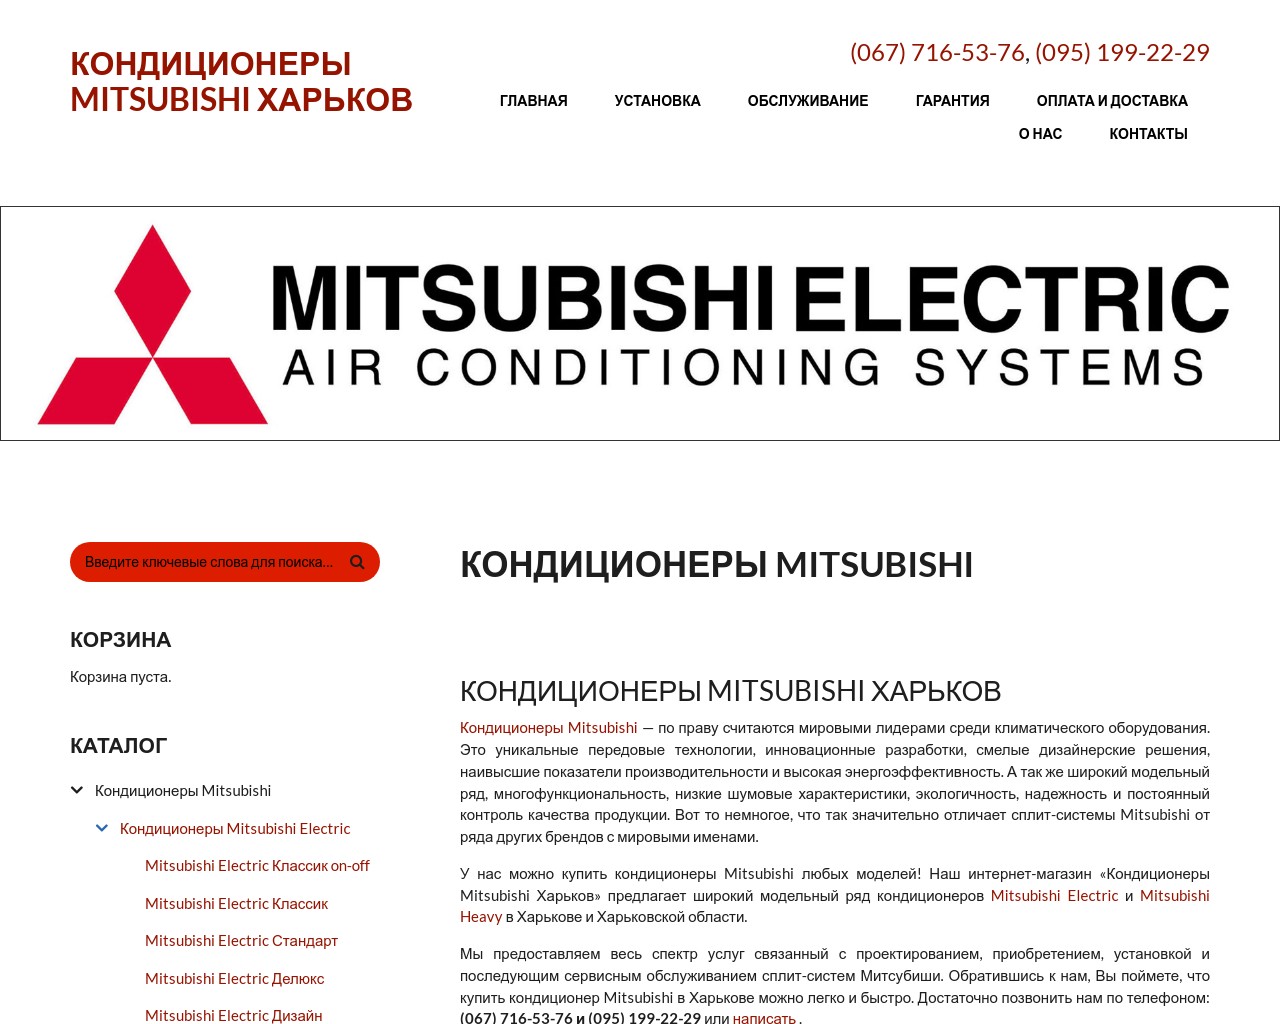 Изображение скриншота сайта - Кондиционеры Mitsubishi. Купить Кондиционеры Mitsubishi в Харькове